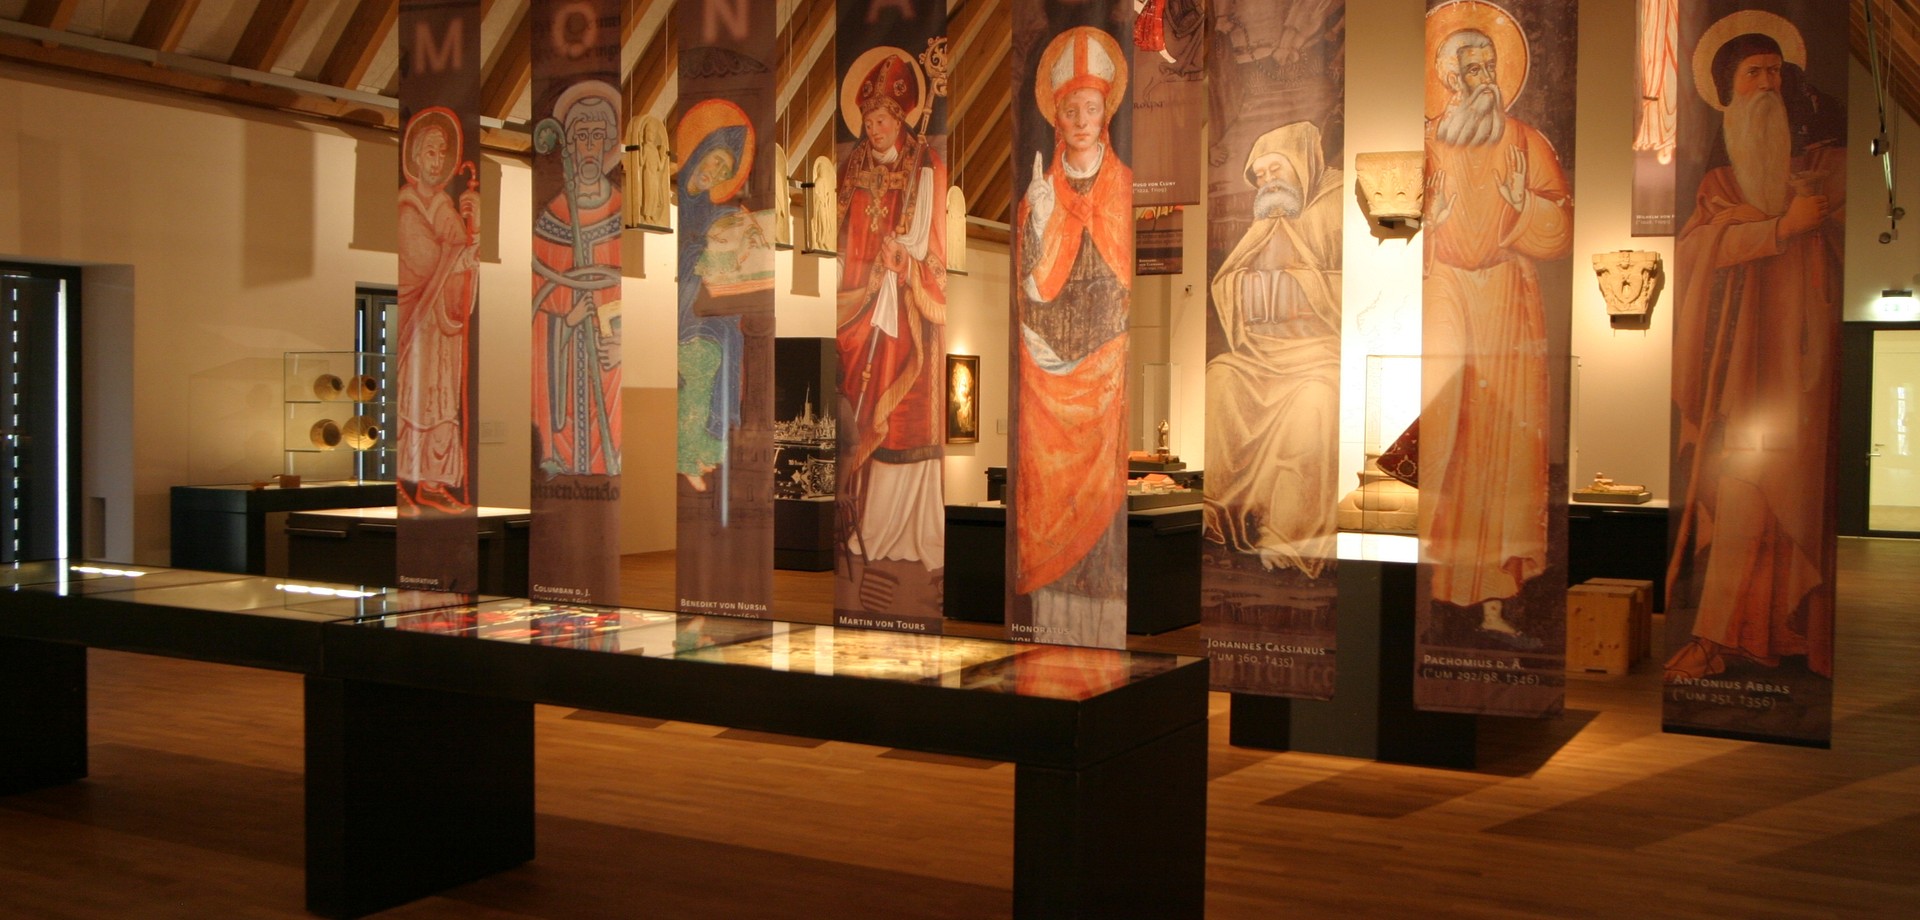 Erster Ausstellungsraum der Dauerausstellung mit unterschiedlichen Exponaten zur Klostergeschichte.